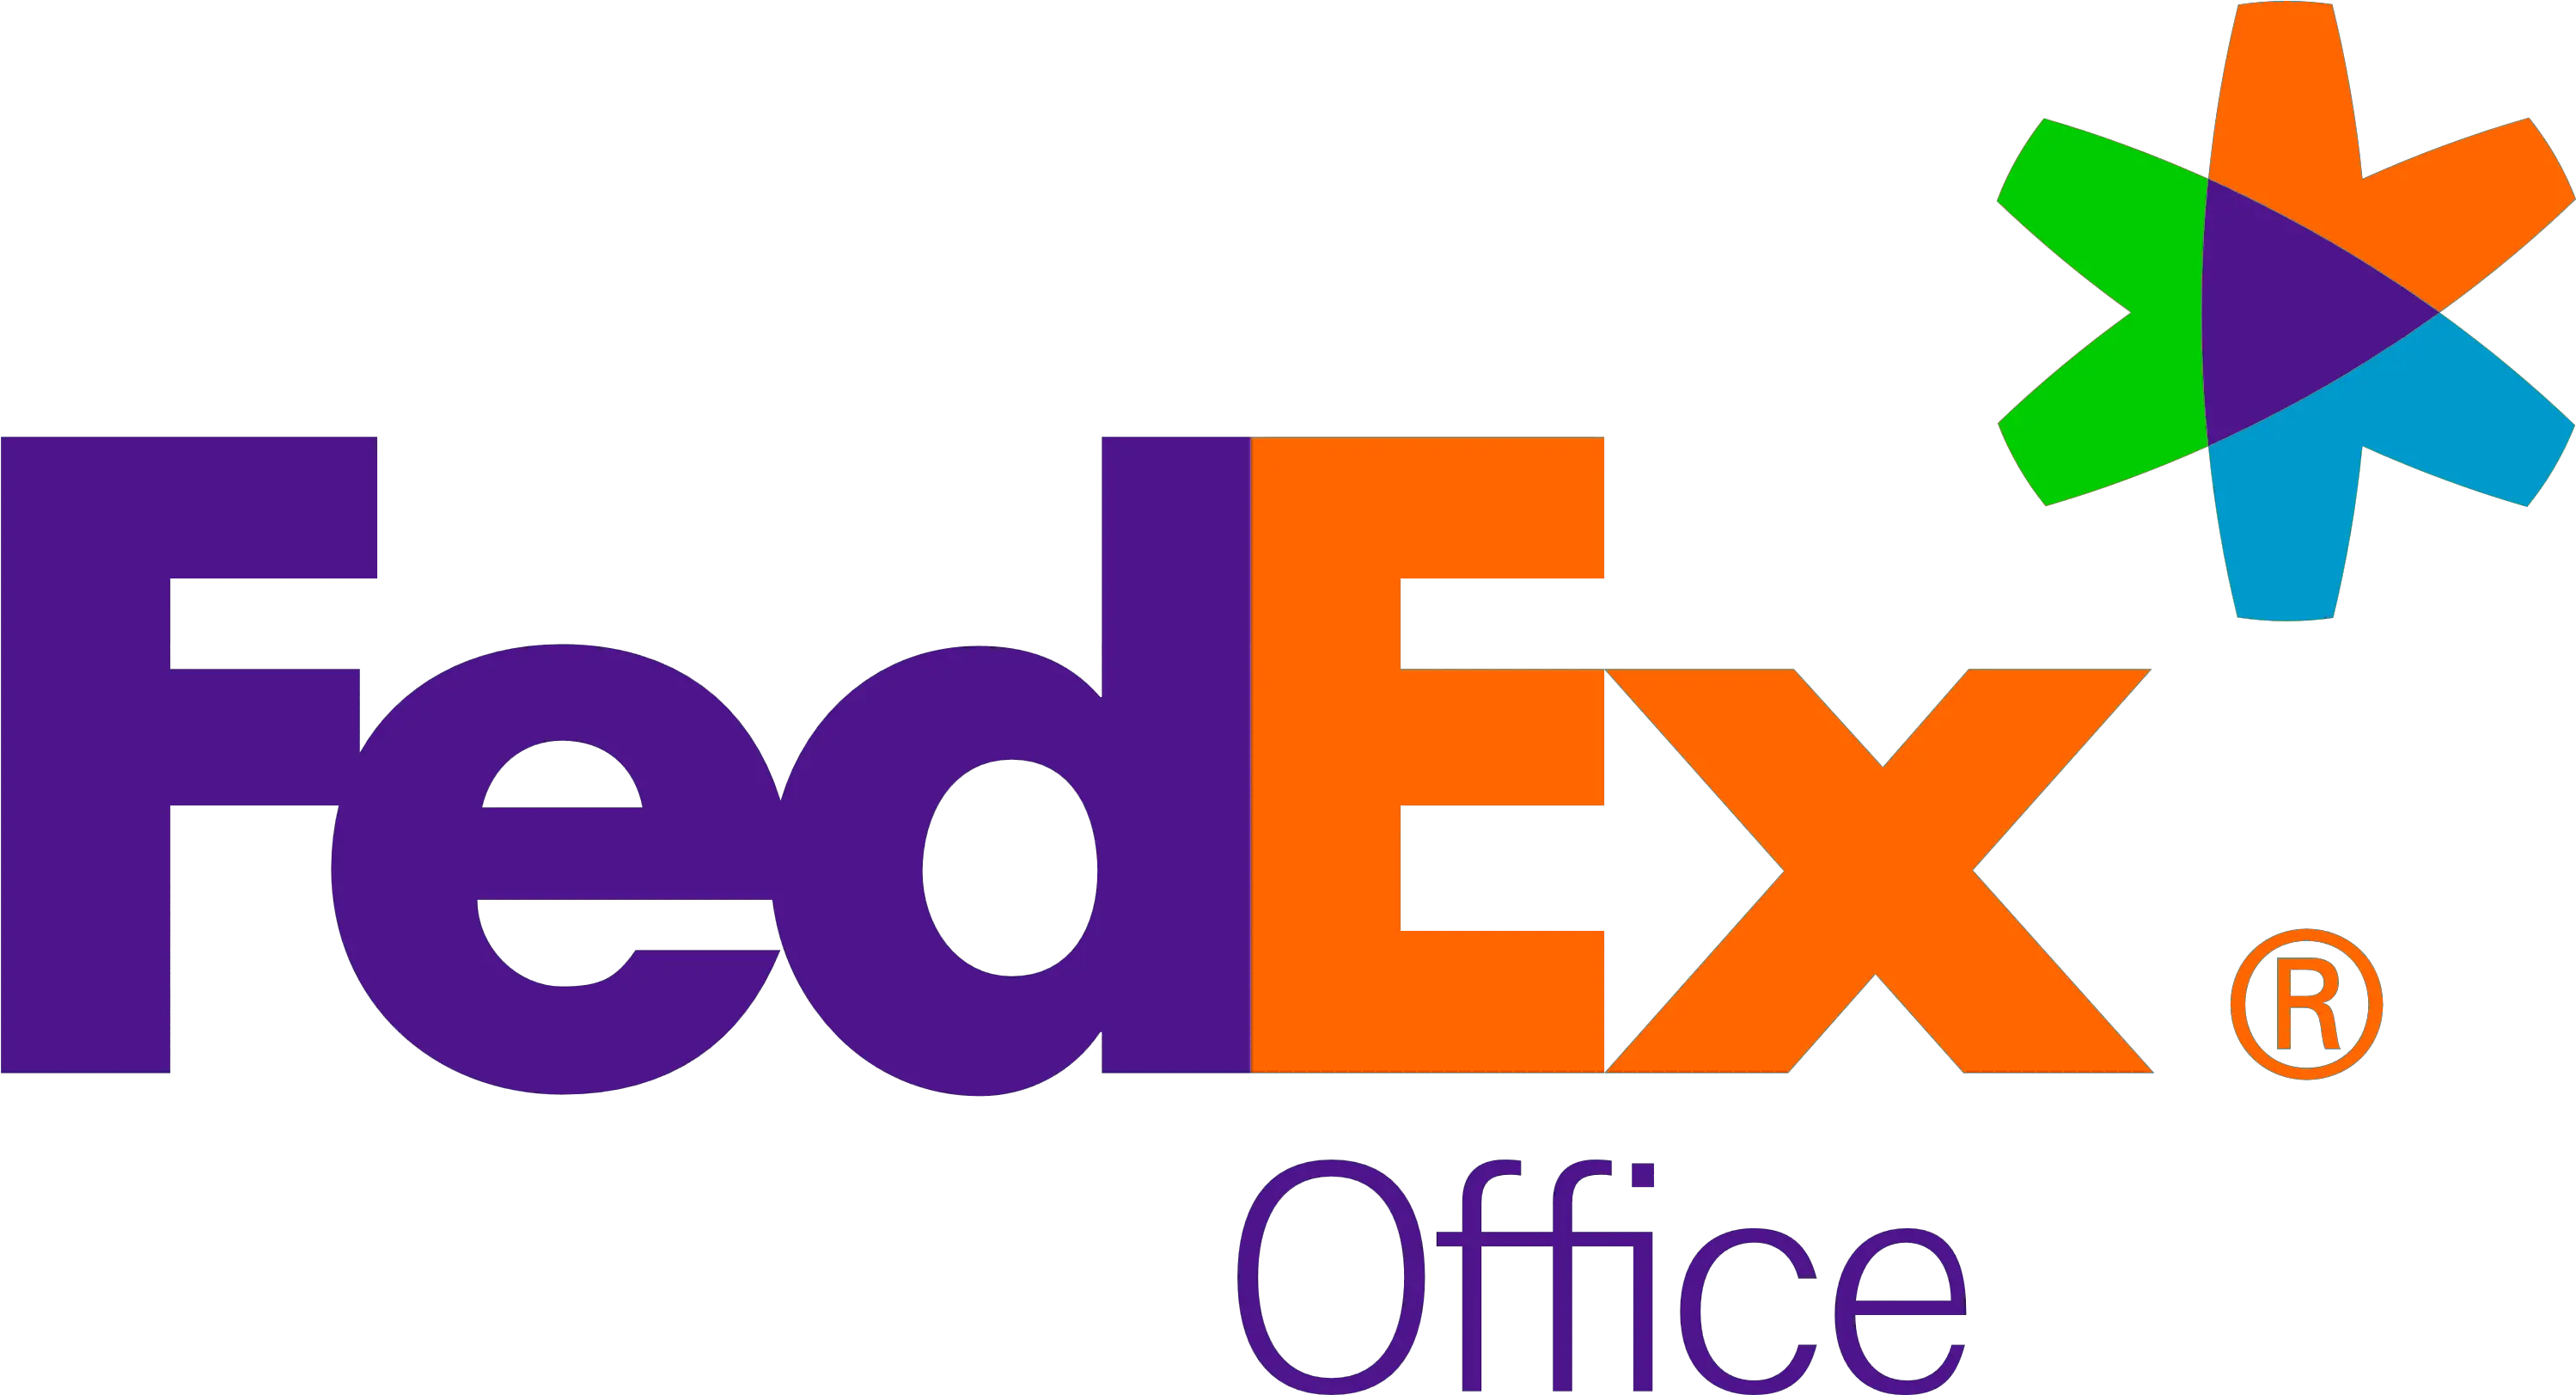 Fedex Express Fedex Office Logo Png Fedex Png